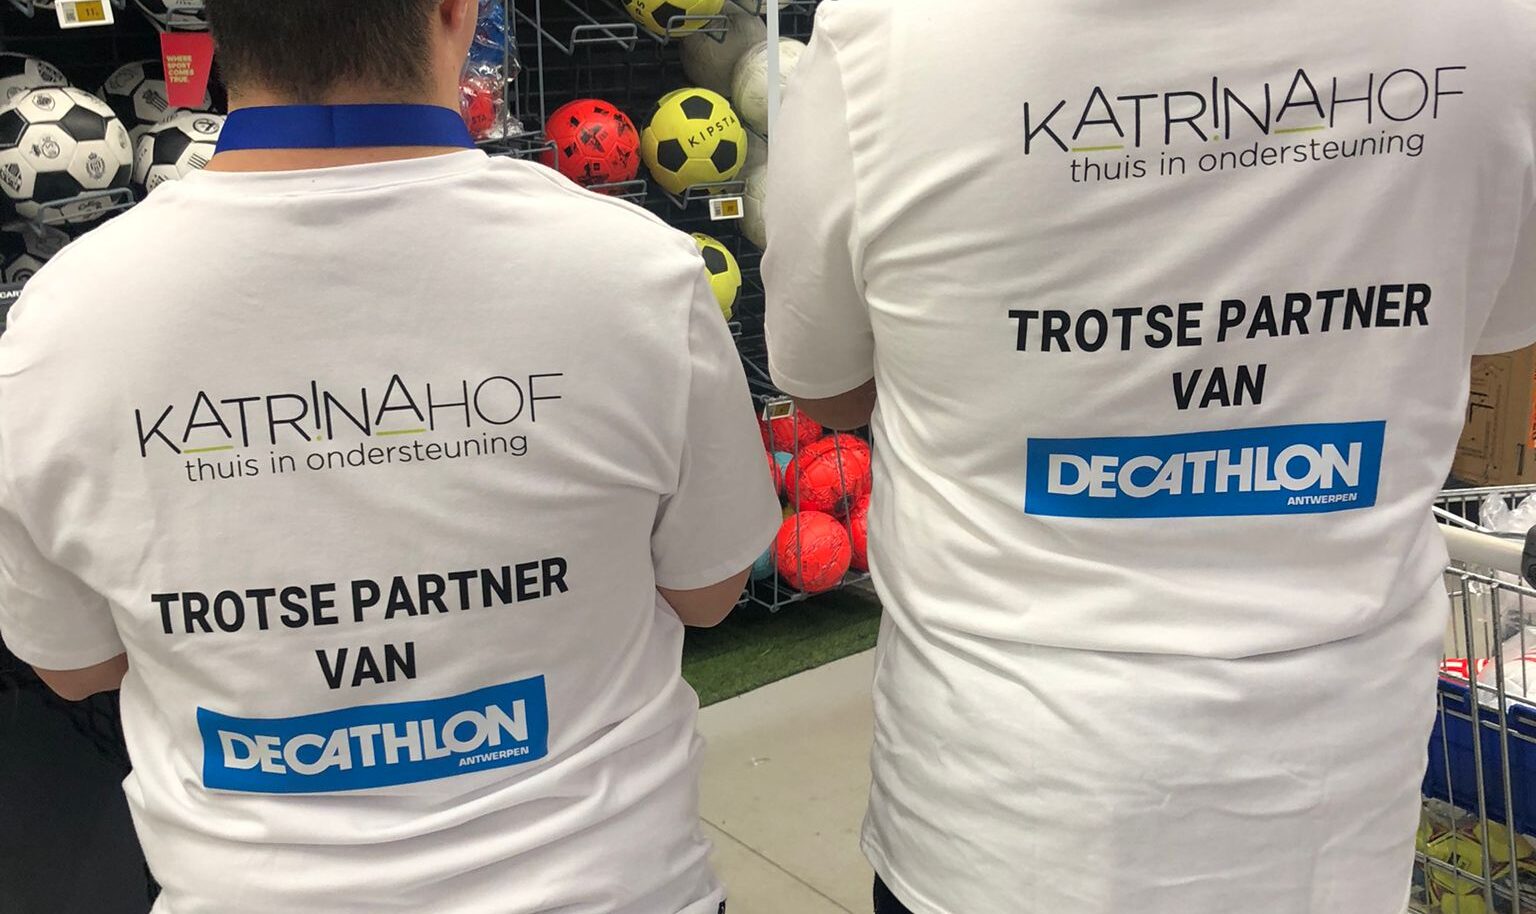 Cliënt draagt t-shirt met opschrift Trotse partner van Decathlon